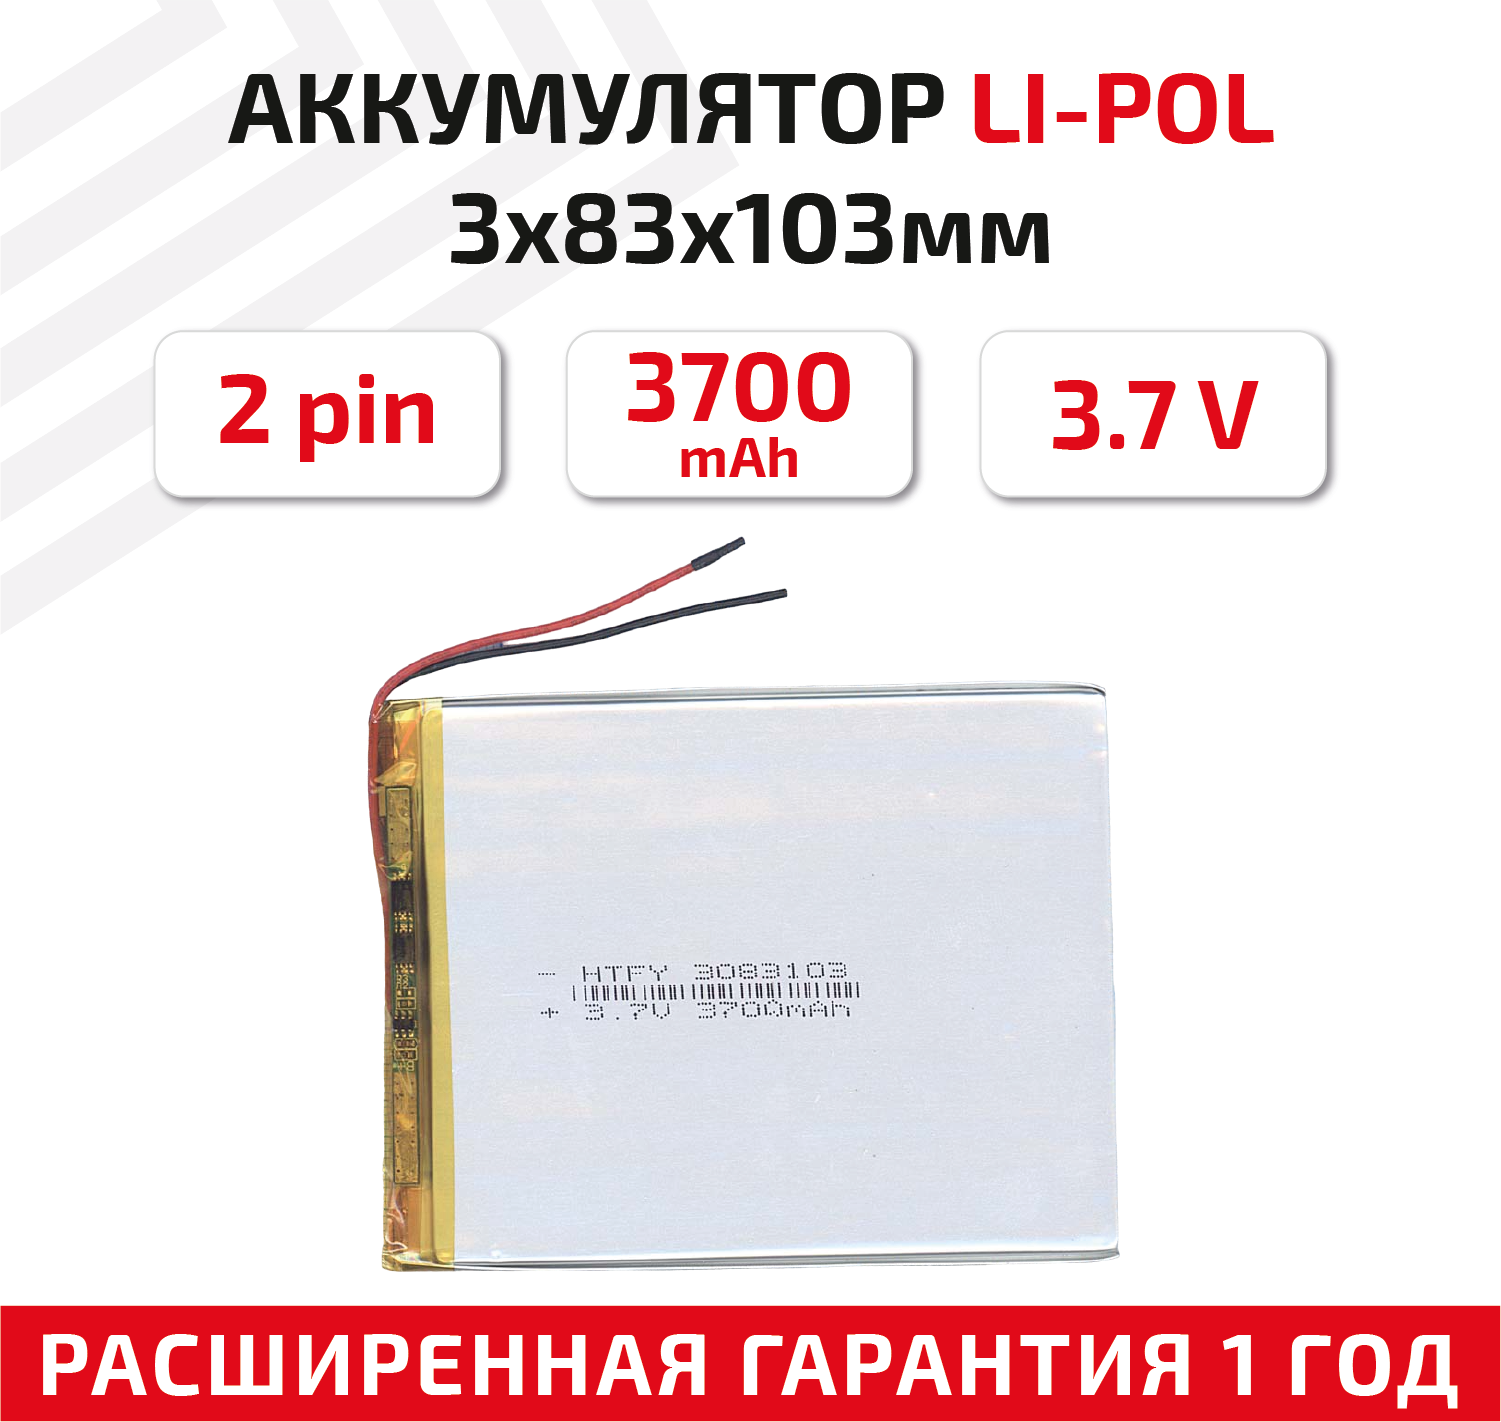 Универсальный аккумулятор (АКБ) для планшета, видеорегистратора и др, 3х83х103мм, 3700мАч, 3.7В, Li-Pol, 2pin (на 2 провода)